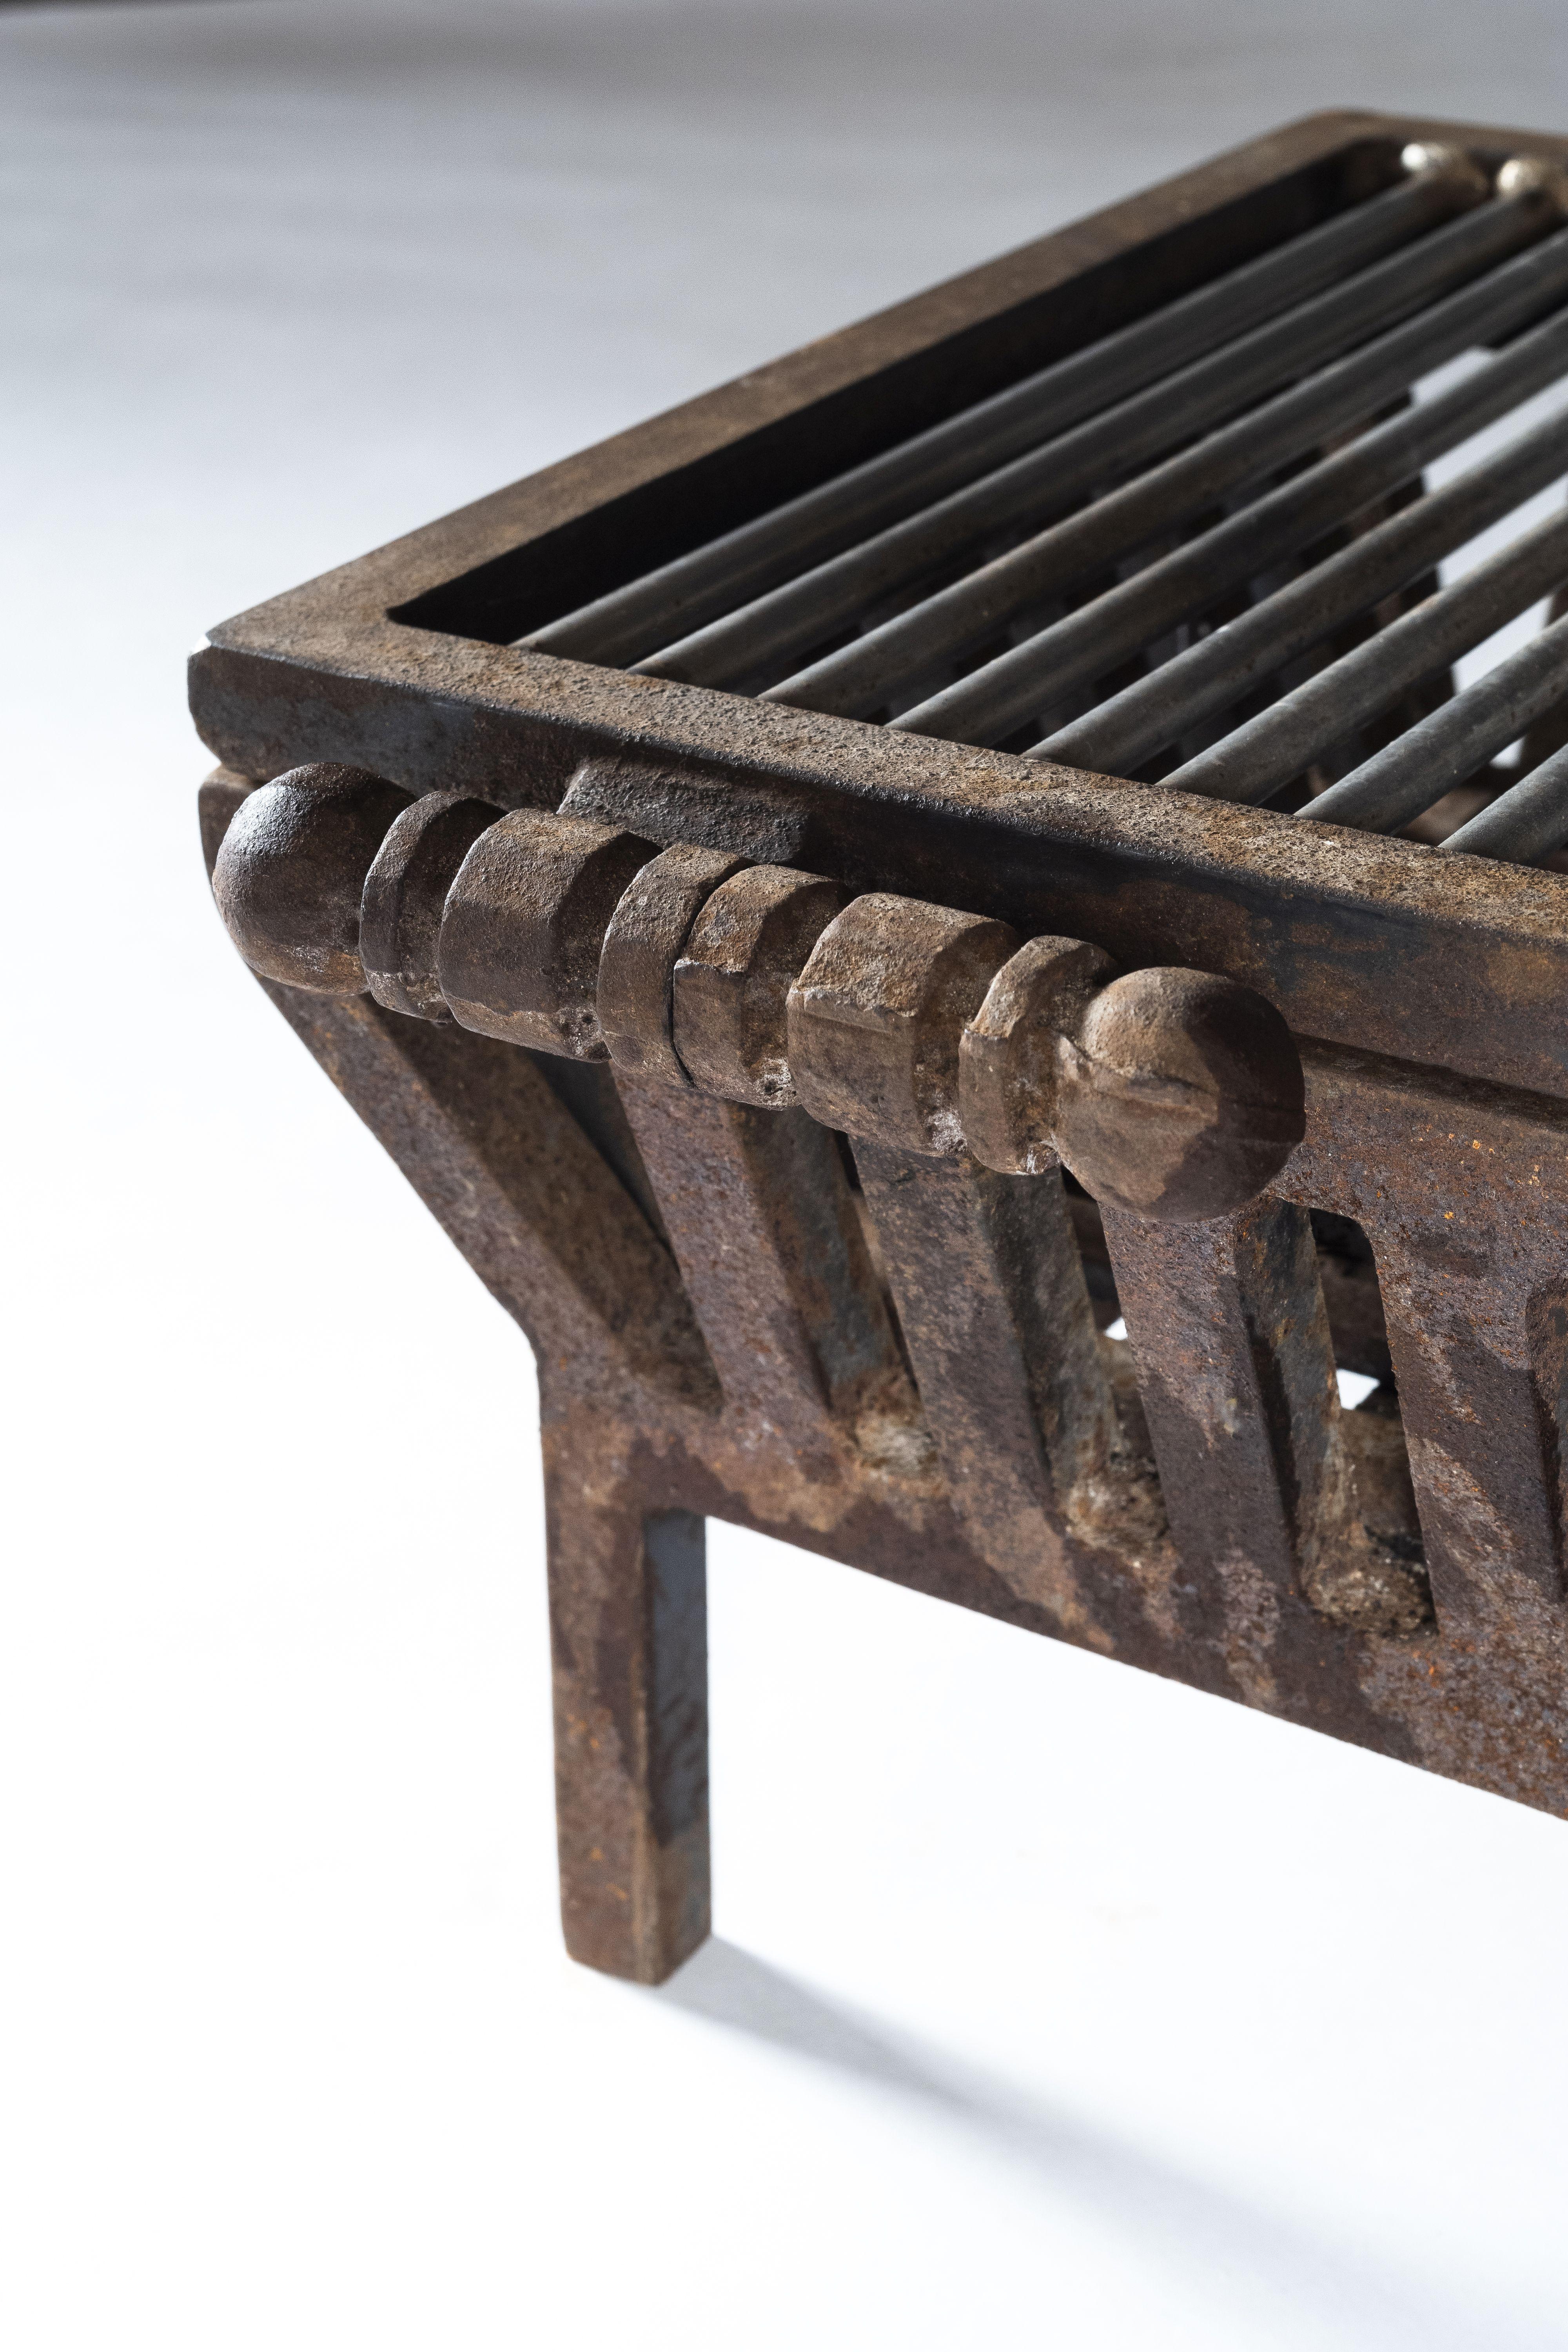 Der BBQ-Feuerrost - unbehandelter Stahl 
Ein Feuerrost zum Einbau eines BBQ-Grills.

 